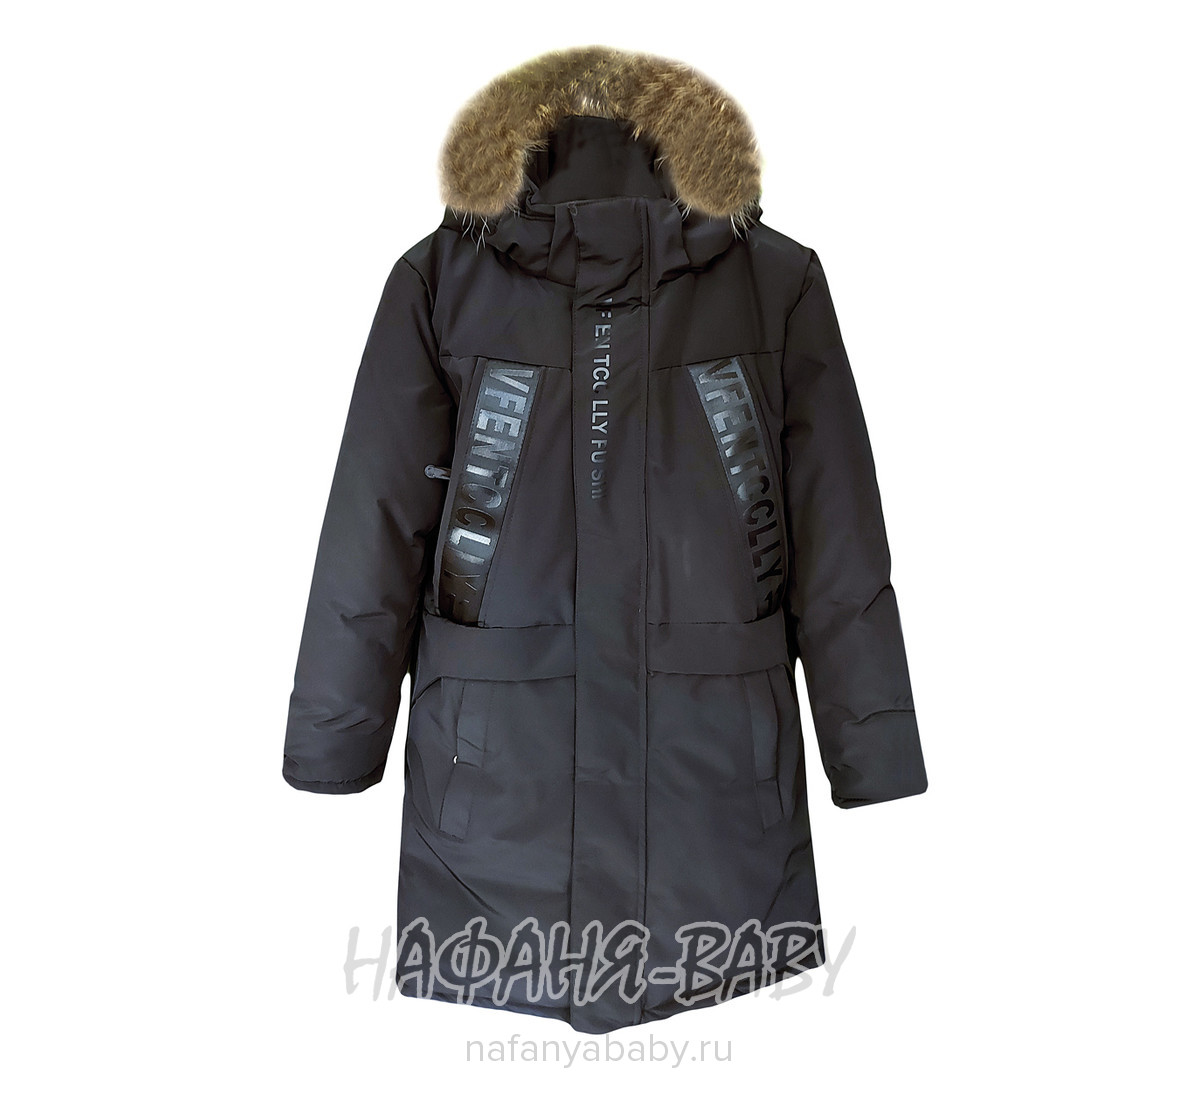 Зимнее пальто для мальчика YUHANG арт: 6620, 10-15 лет, оптом Китай (Пекин)